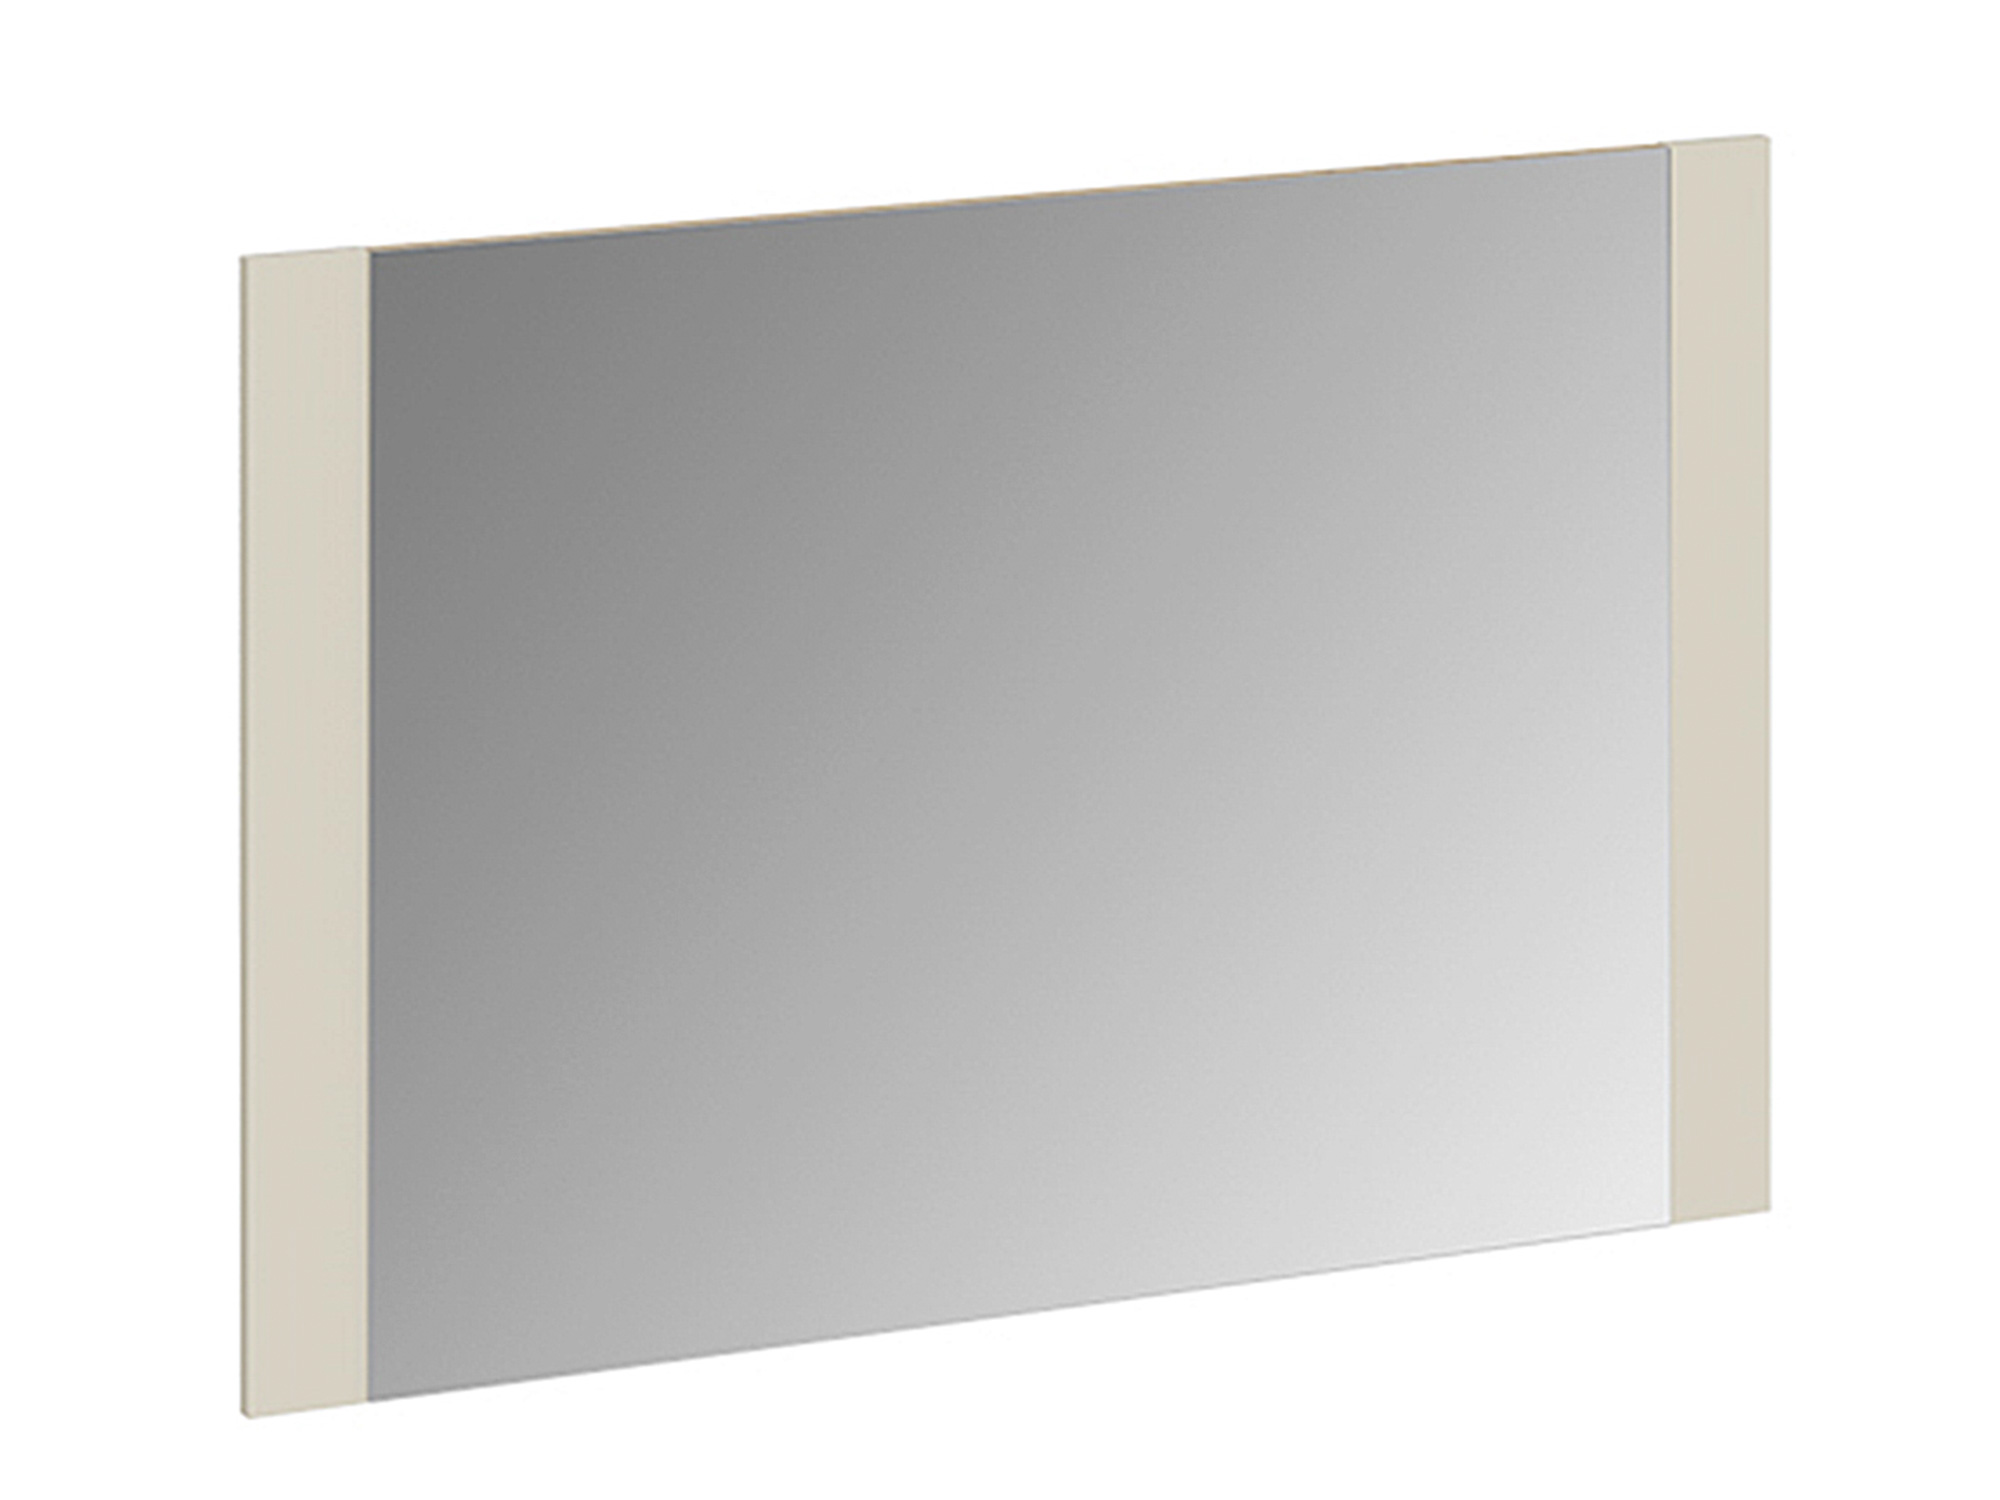 Панель с зеркалом Николь Фон Бежевый, , Бежевый, Зеркало, ЛДСП панель с зеркалом николь фон коричневый коричневый бежевый зеркало лдсп